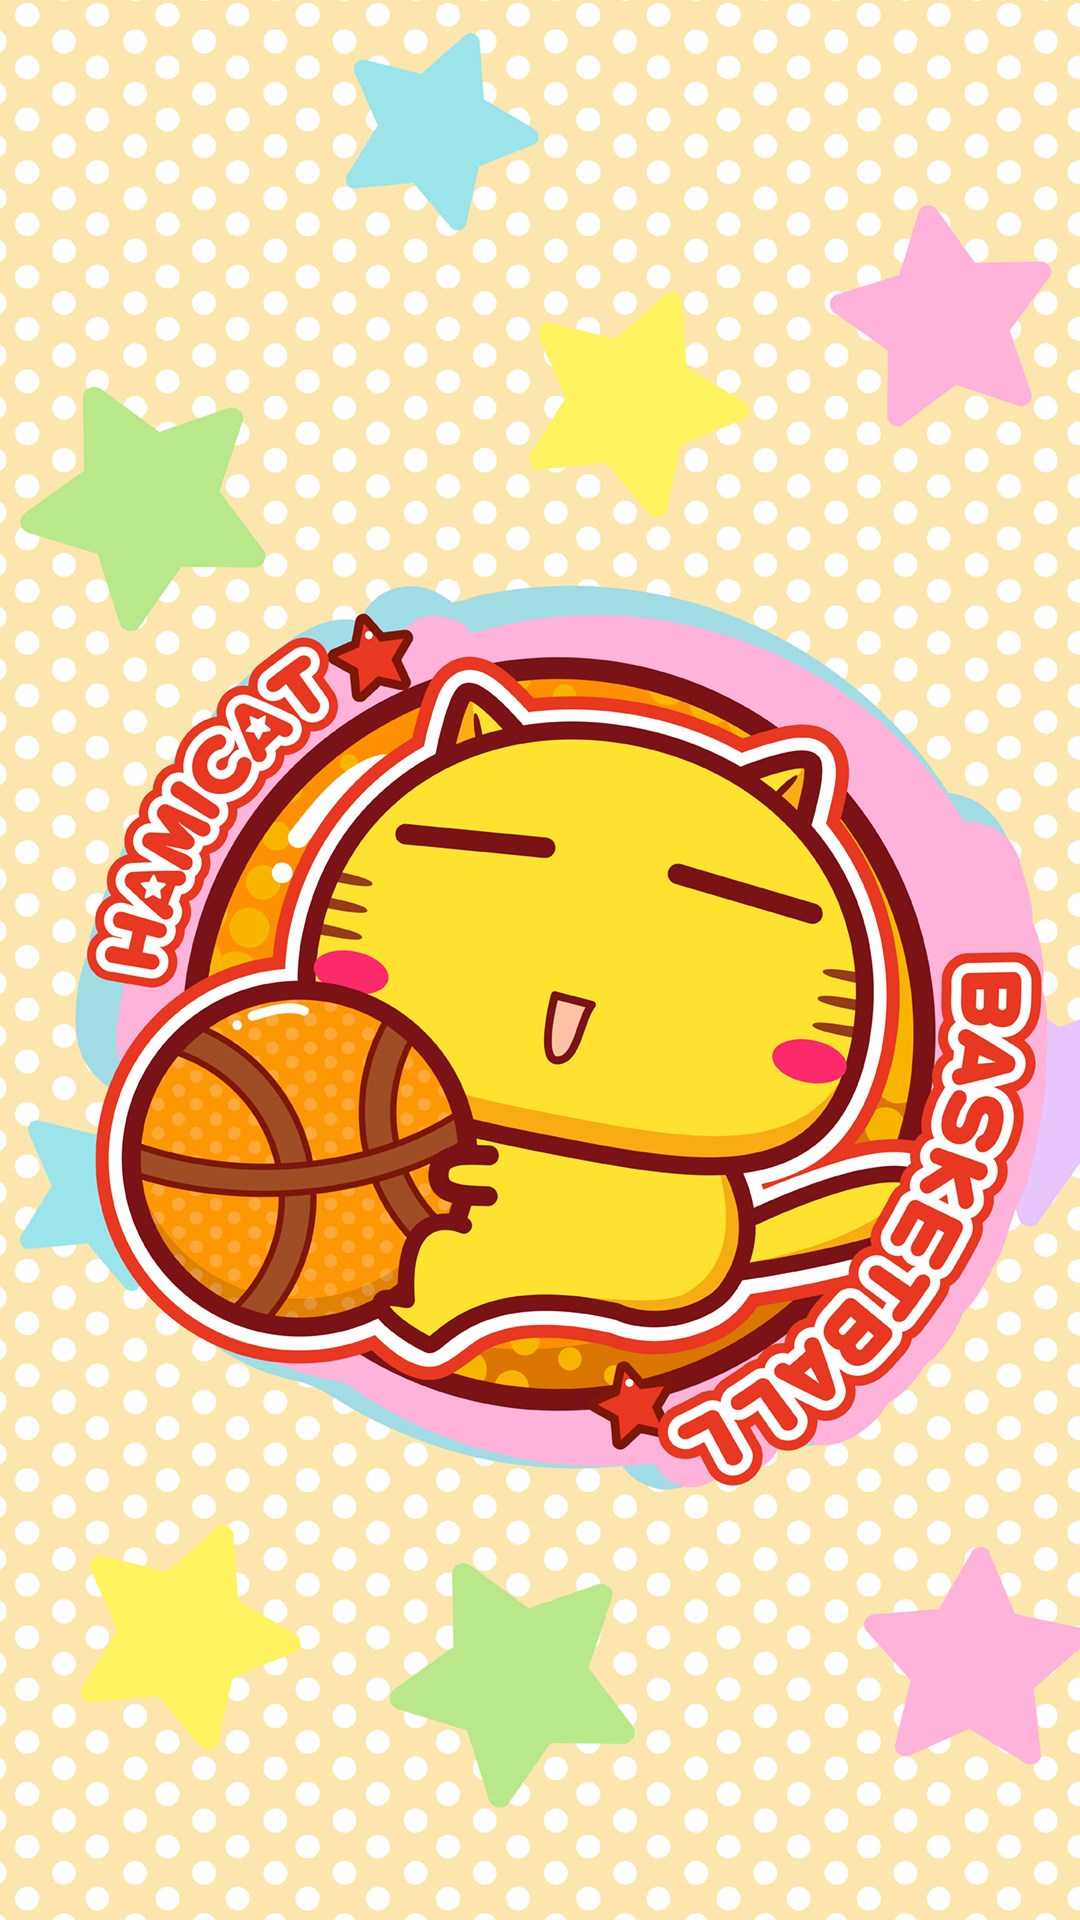 哈咪猫爱篮球